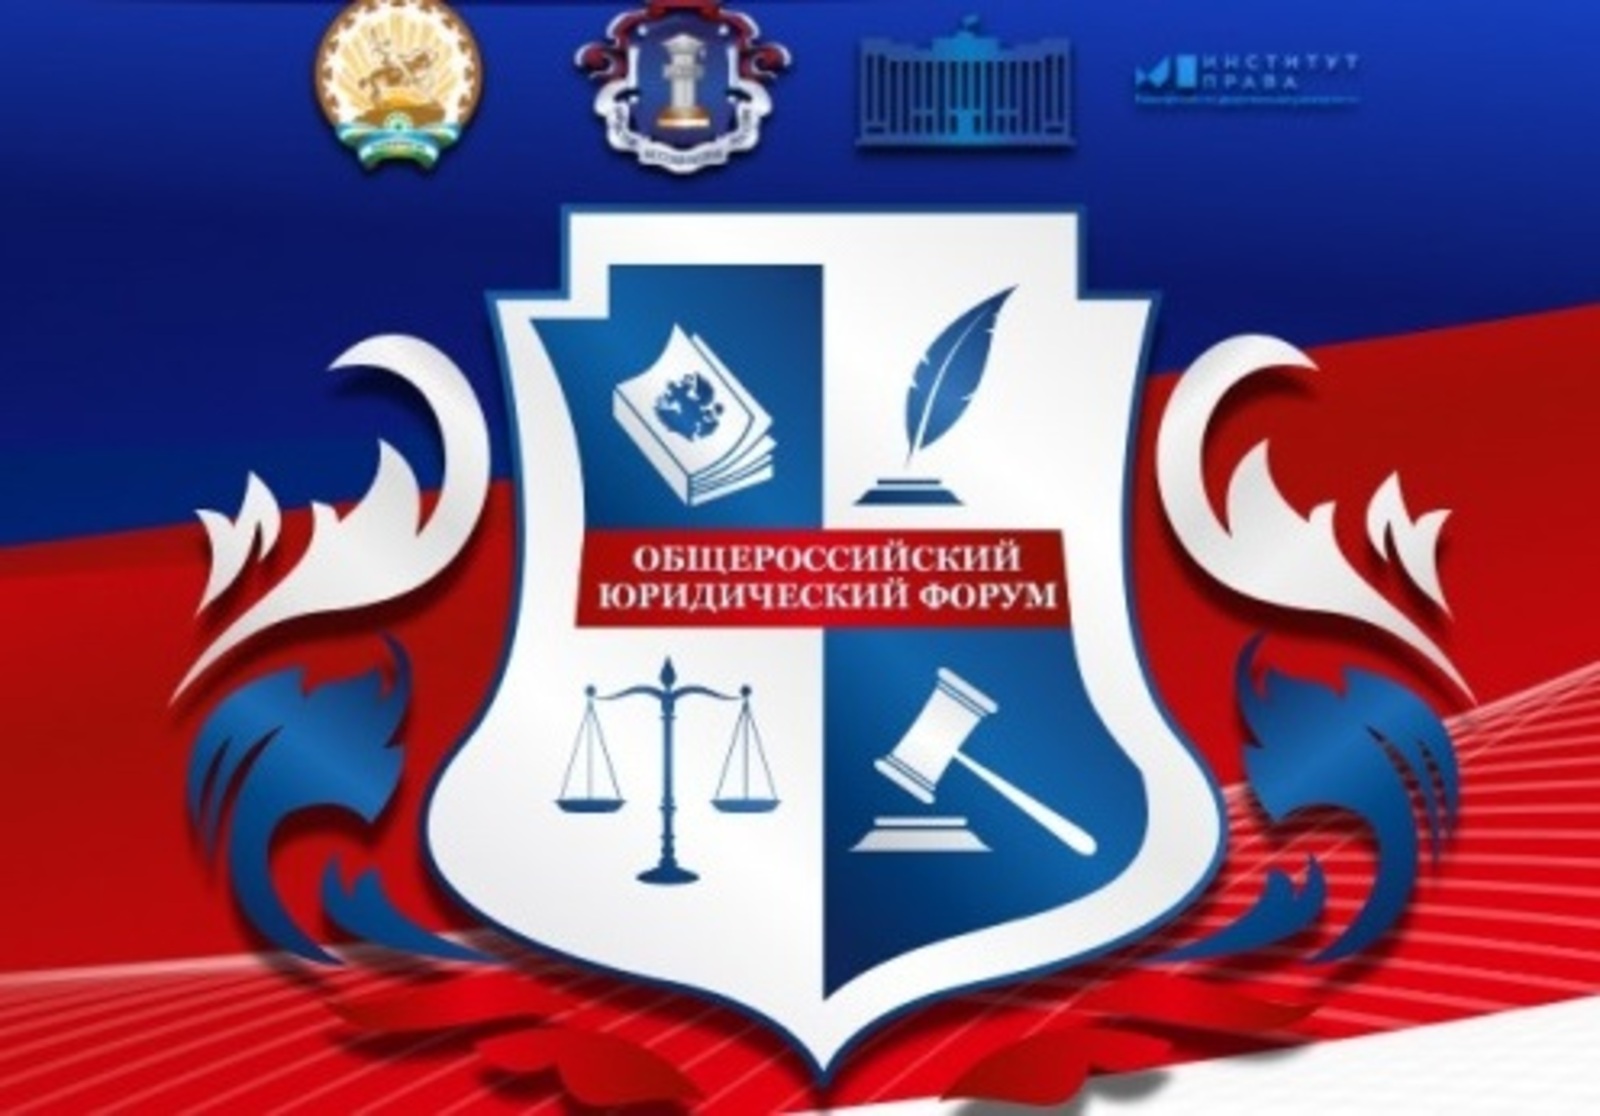 VII Общероссийский юридический форум «Трансформация правовой системы в эпоху современных вызовов»